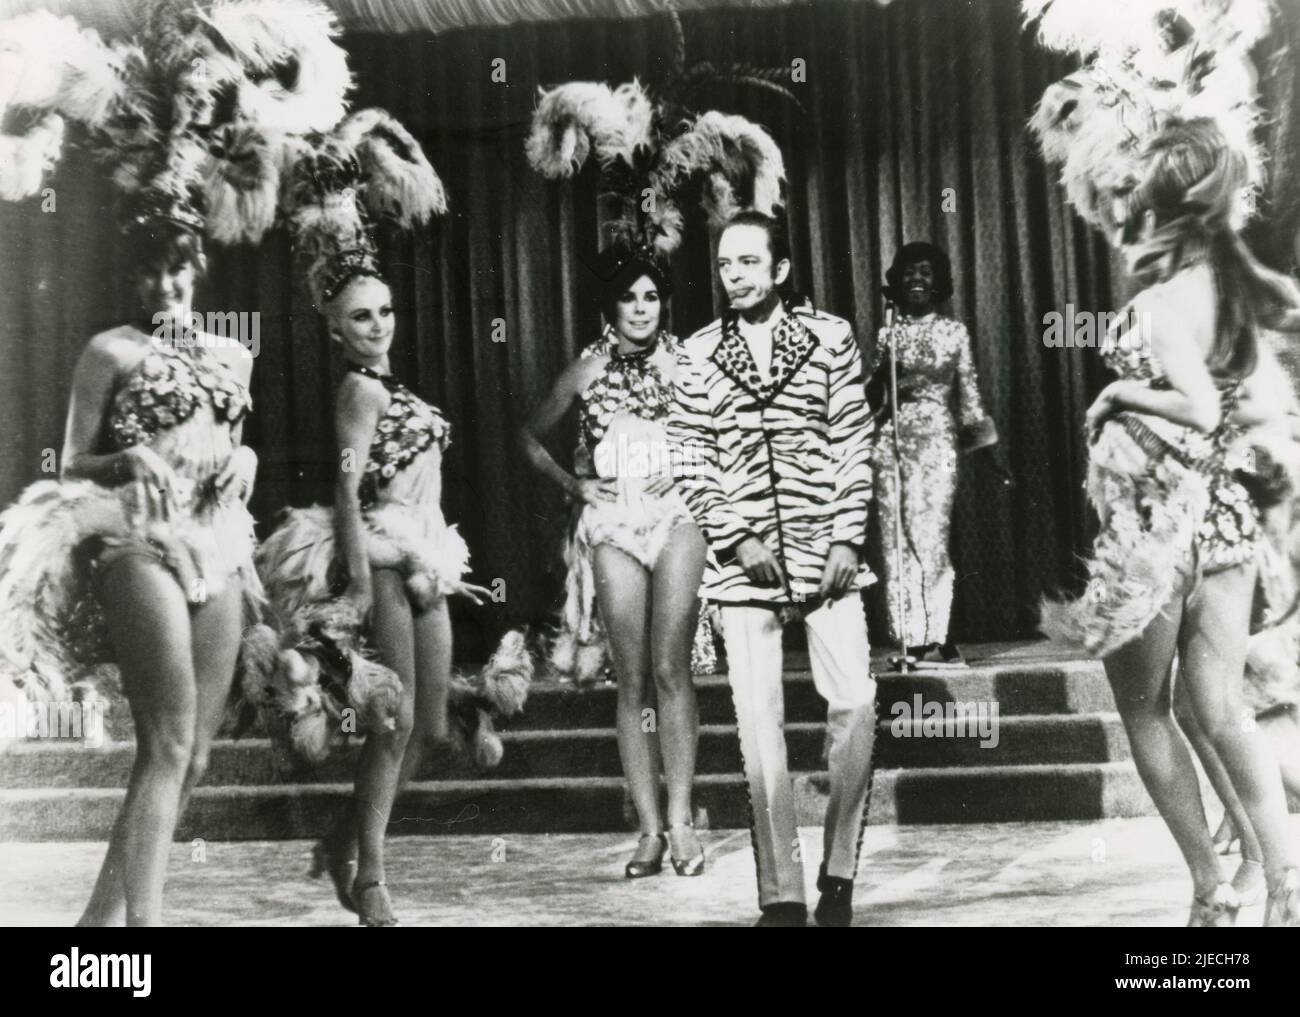 El actor estadounidense Don Knotts en la película The Love God?, EE.UU. 1969 Foto de stock